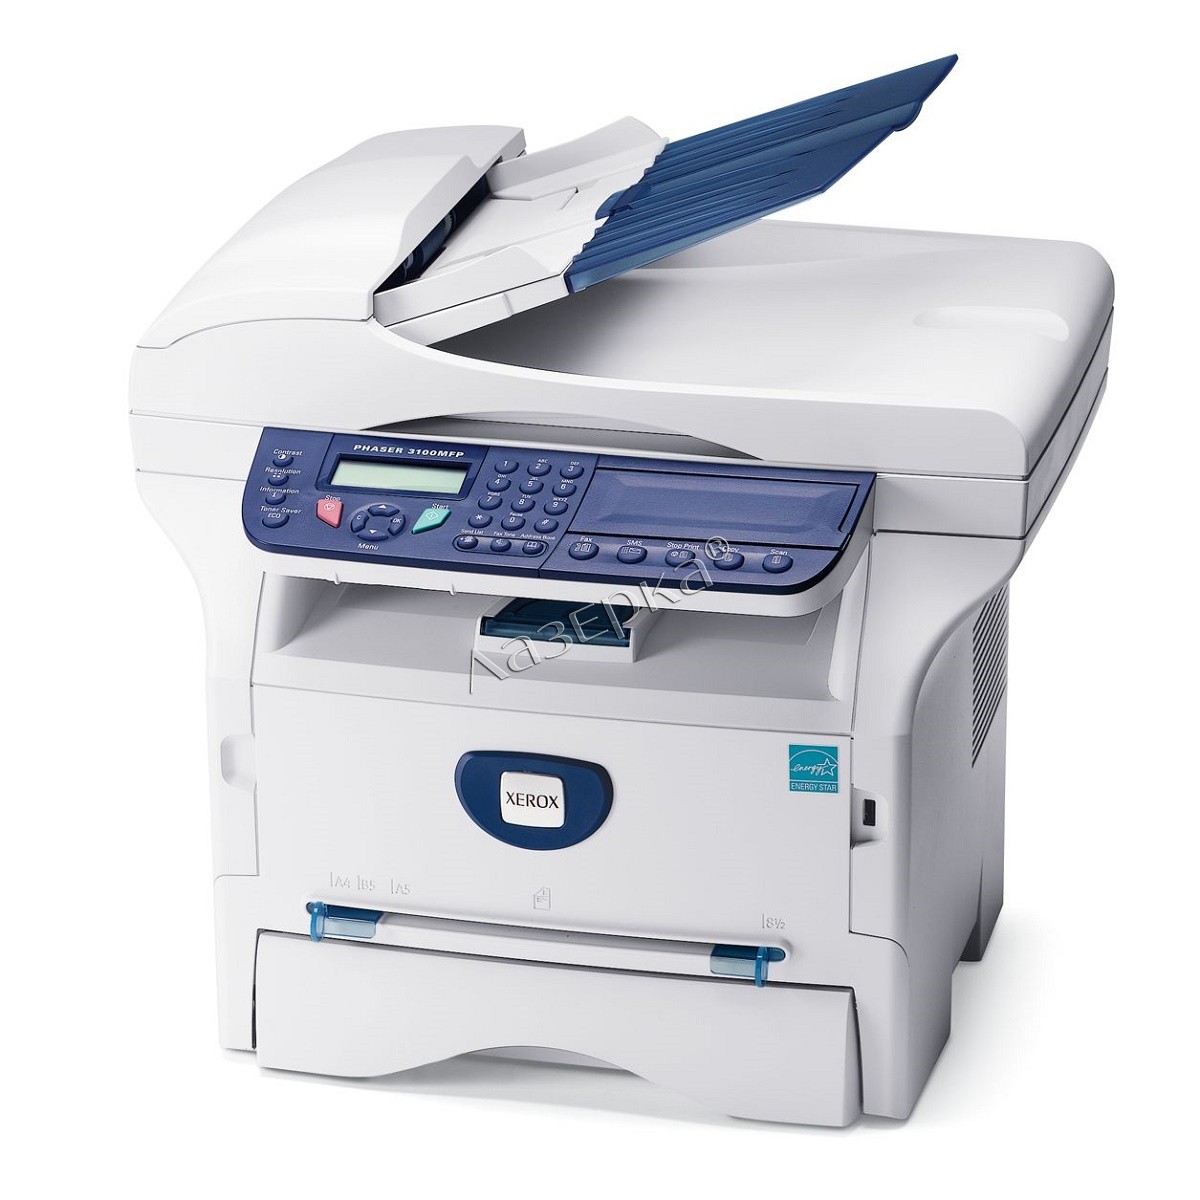 Принтер xerox phaser 3100 mfp печатает черные листы